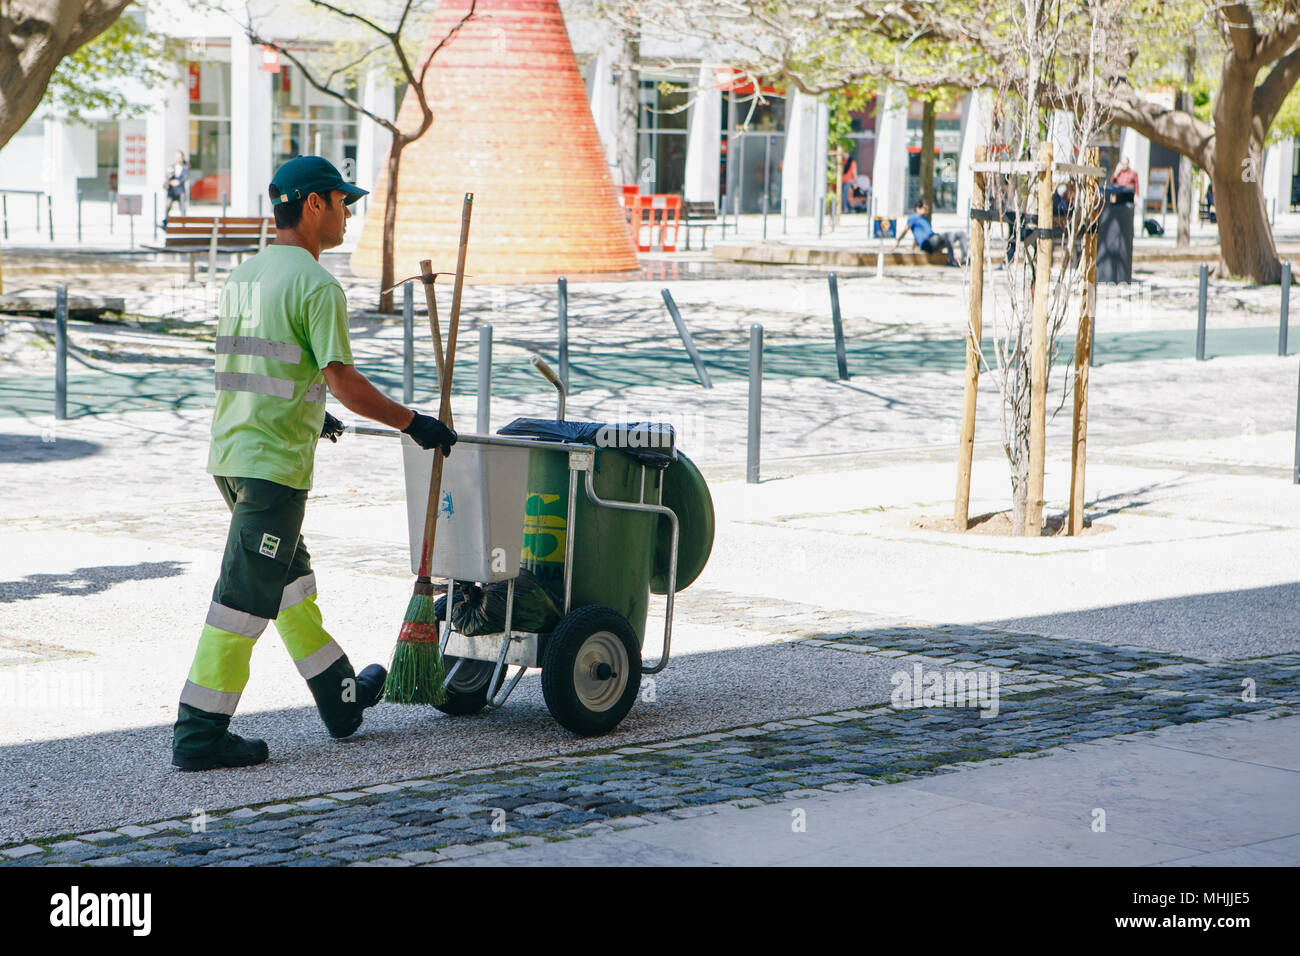 Lisbonne, 25 avril 2018 : un nettoyeur professionnel travaille sur une rue  de la ville. Nettoyage du territoire et en prenant soin de bien-être  écologique Photo Stock - Alamy